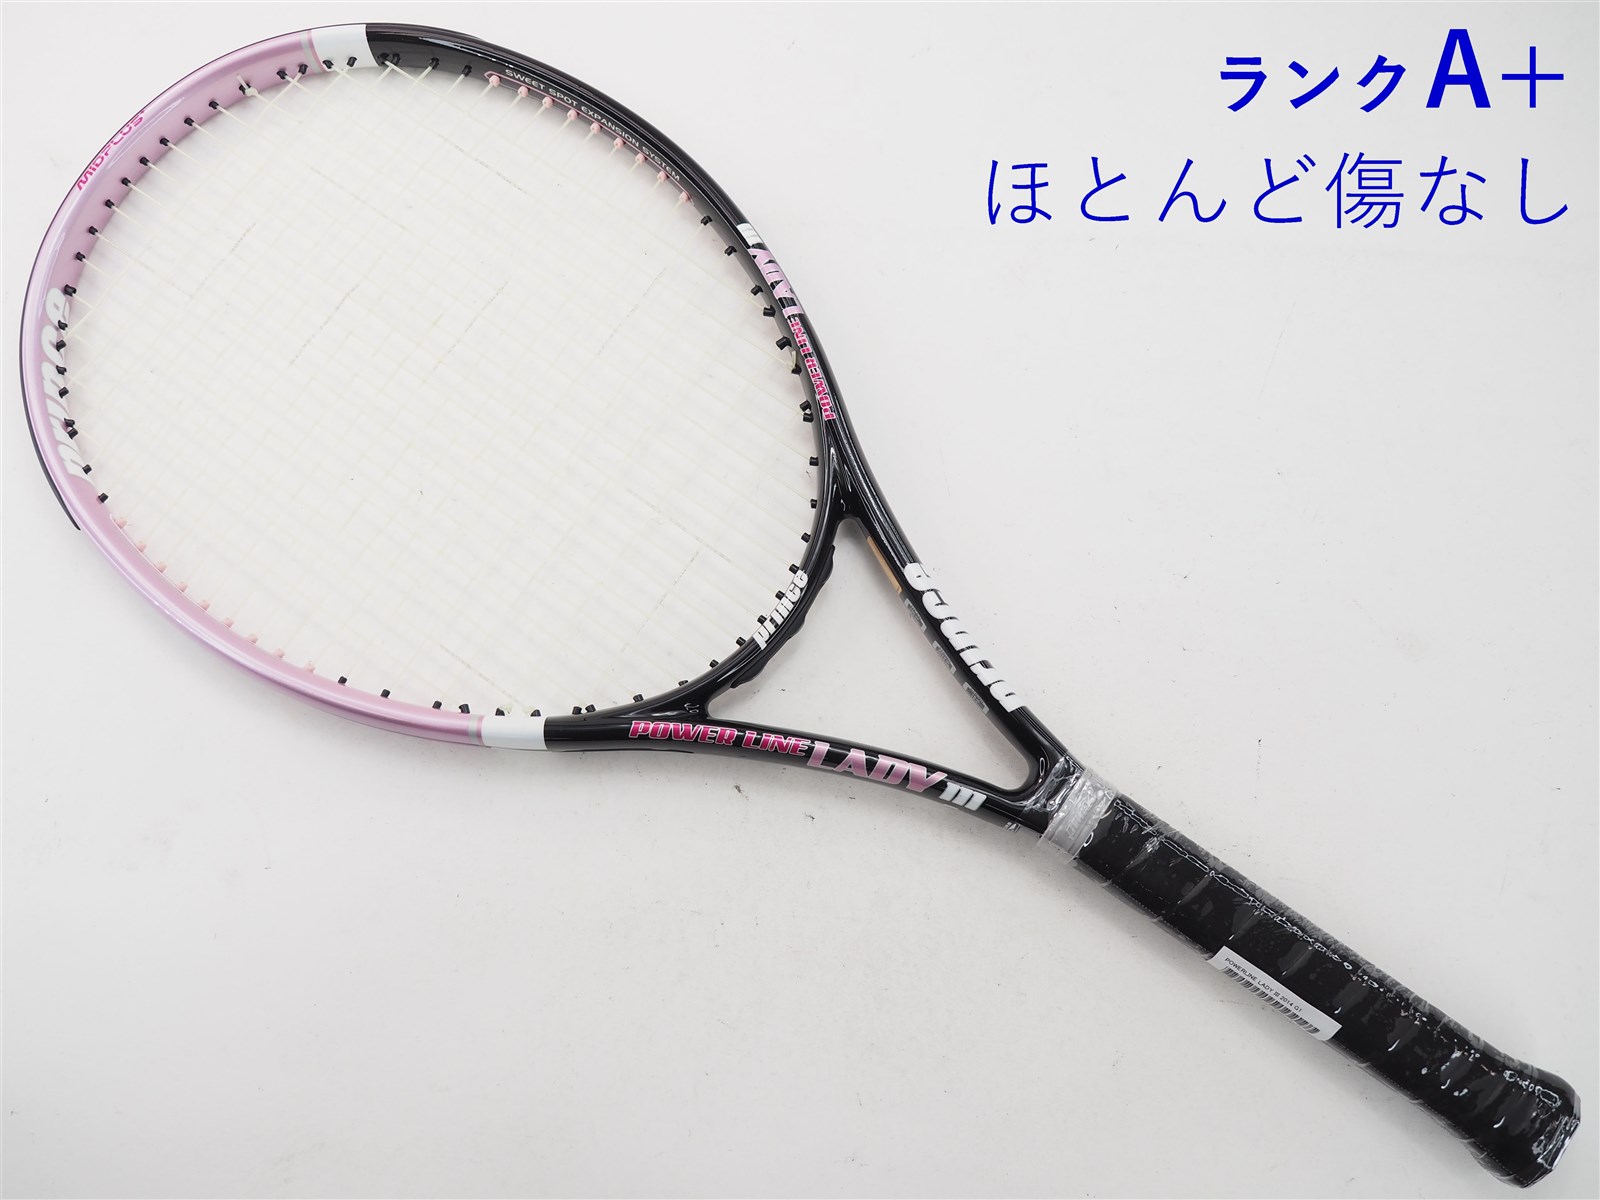 【中古】プリンス パワーライン レディー 3 2014年モデルPRINCE POWERLINE LADY III 2014(G1)【中古 テニスラケット】【送料無料】の通販・販売|  プリンス| テニスサポートセンターへ